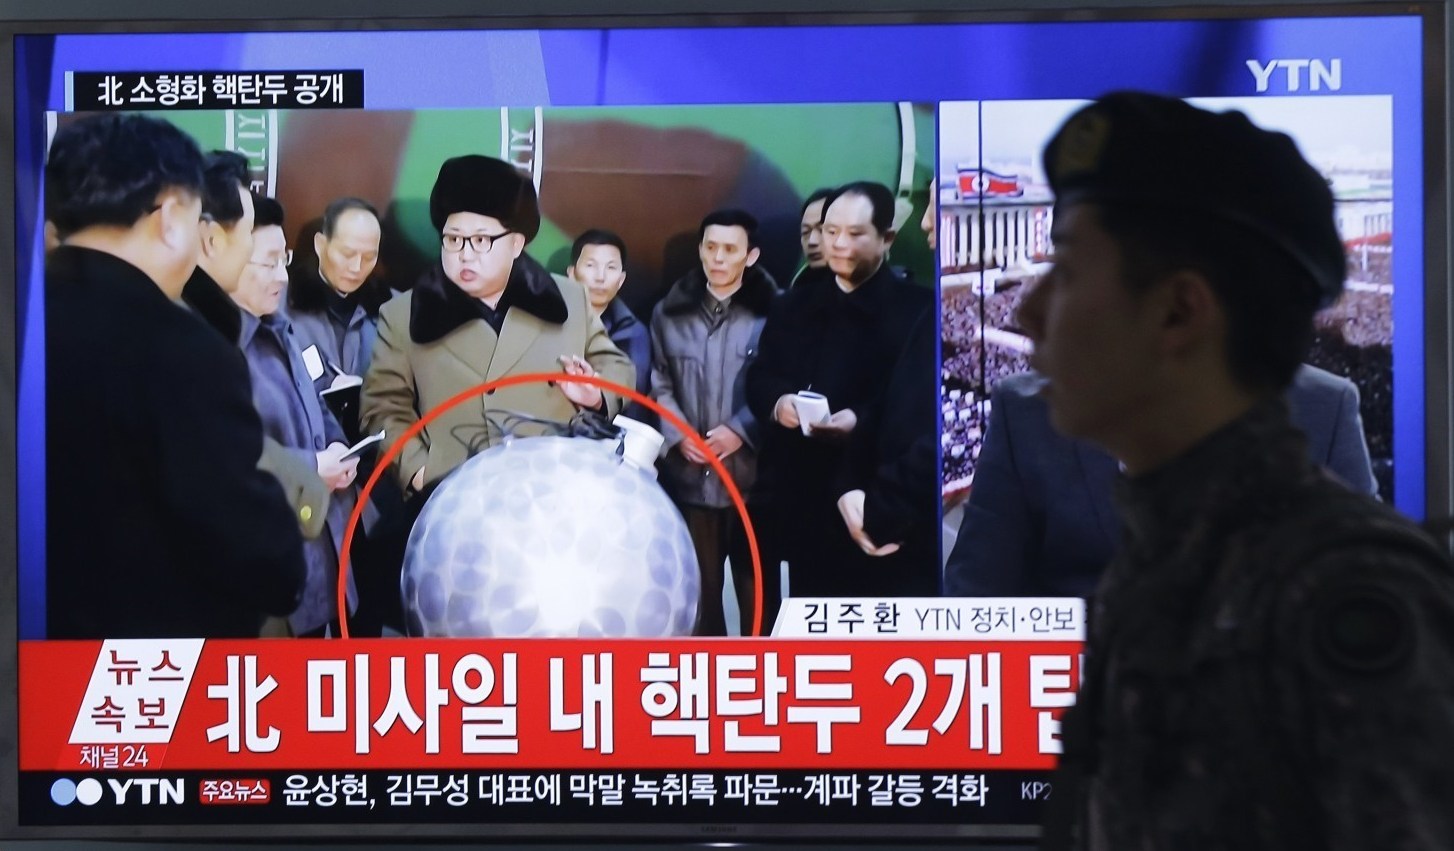 رهبر کره شمالی در کنار بمب هسته ای (تصویر)